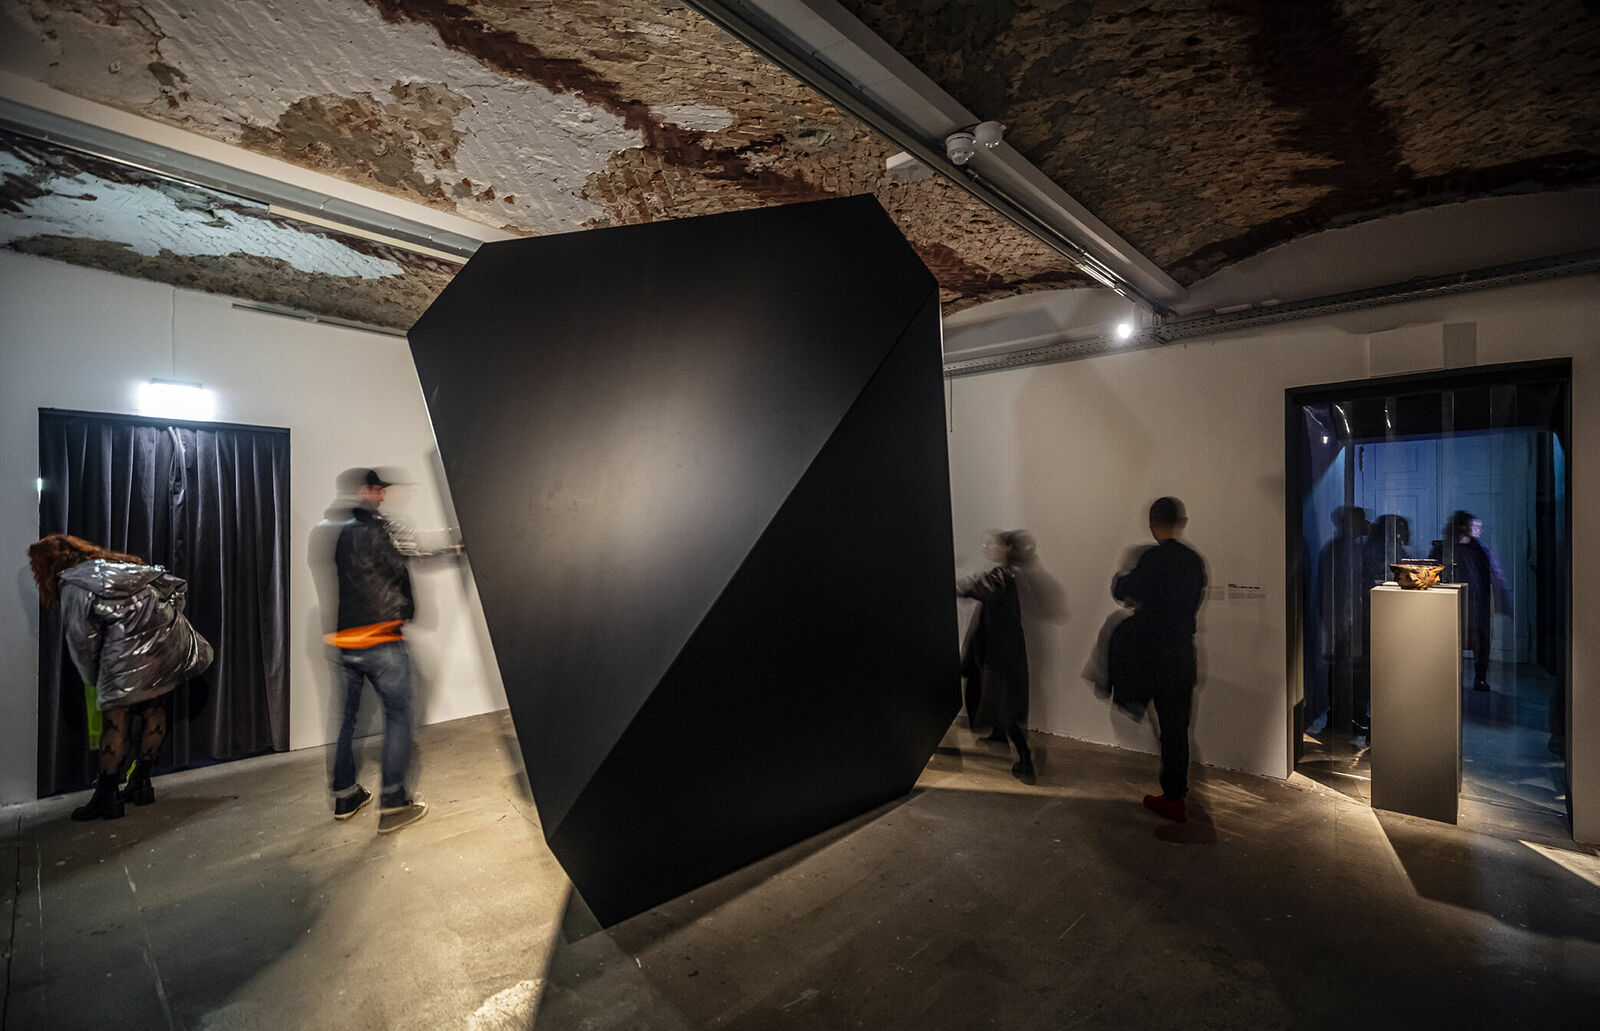 Eine Kunstinstallation in einem Raum mit rustikalem Ambiente. Im Zentrum steht ein großes, monolithisches schwarzes Objekt. Besucher bewegen sich um die Skulptur herum und durch den Raum